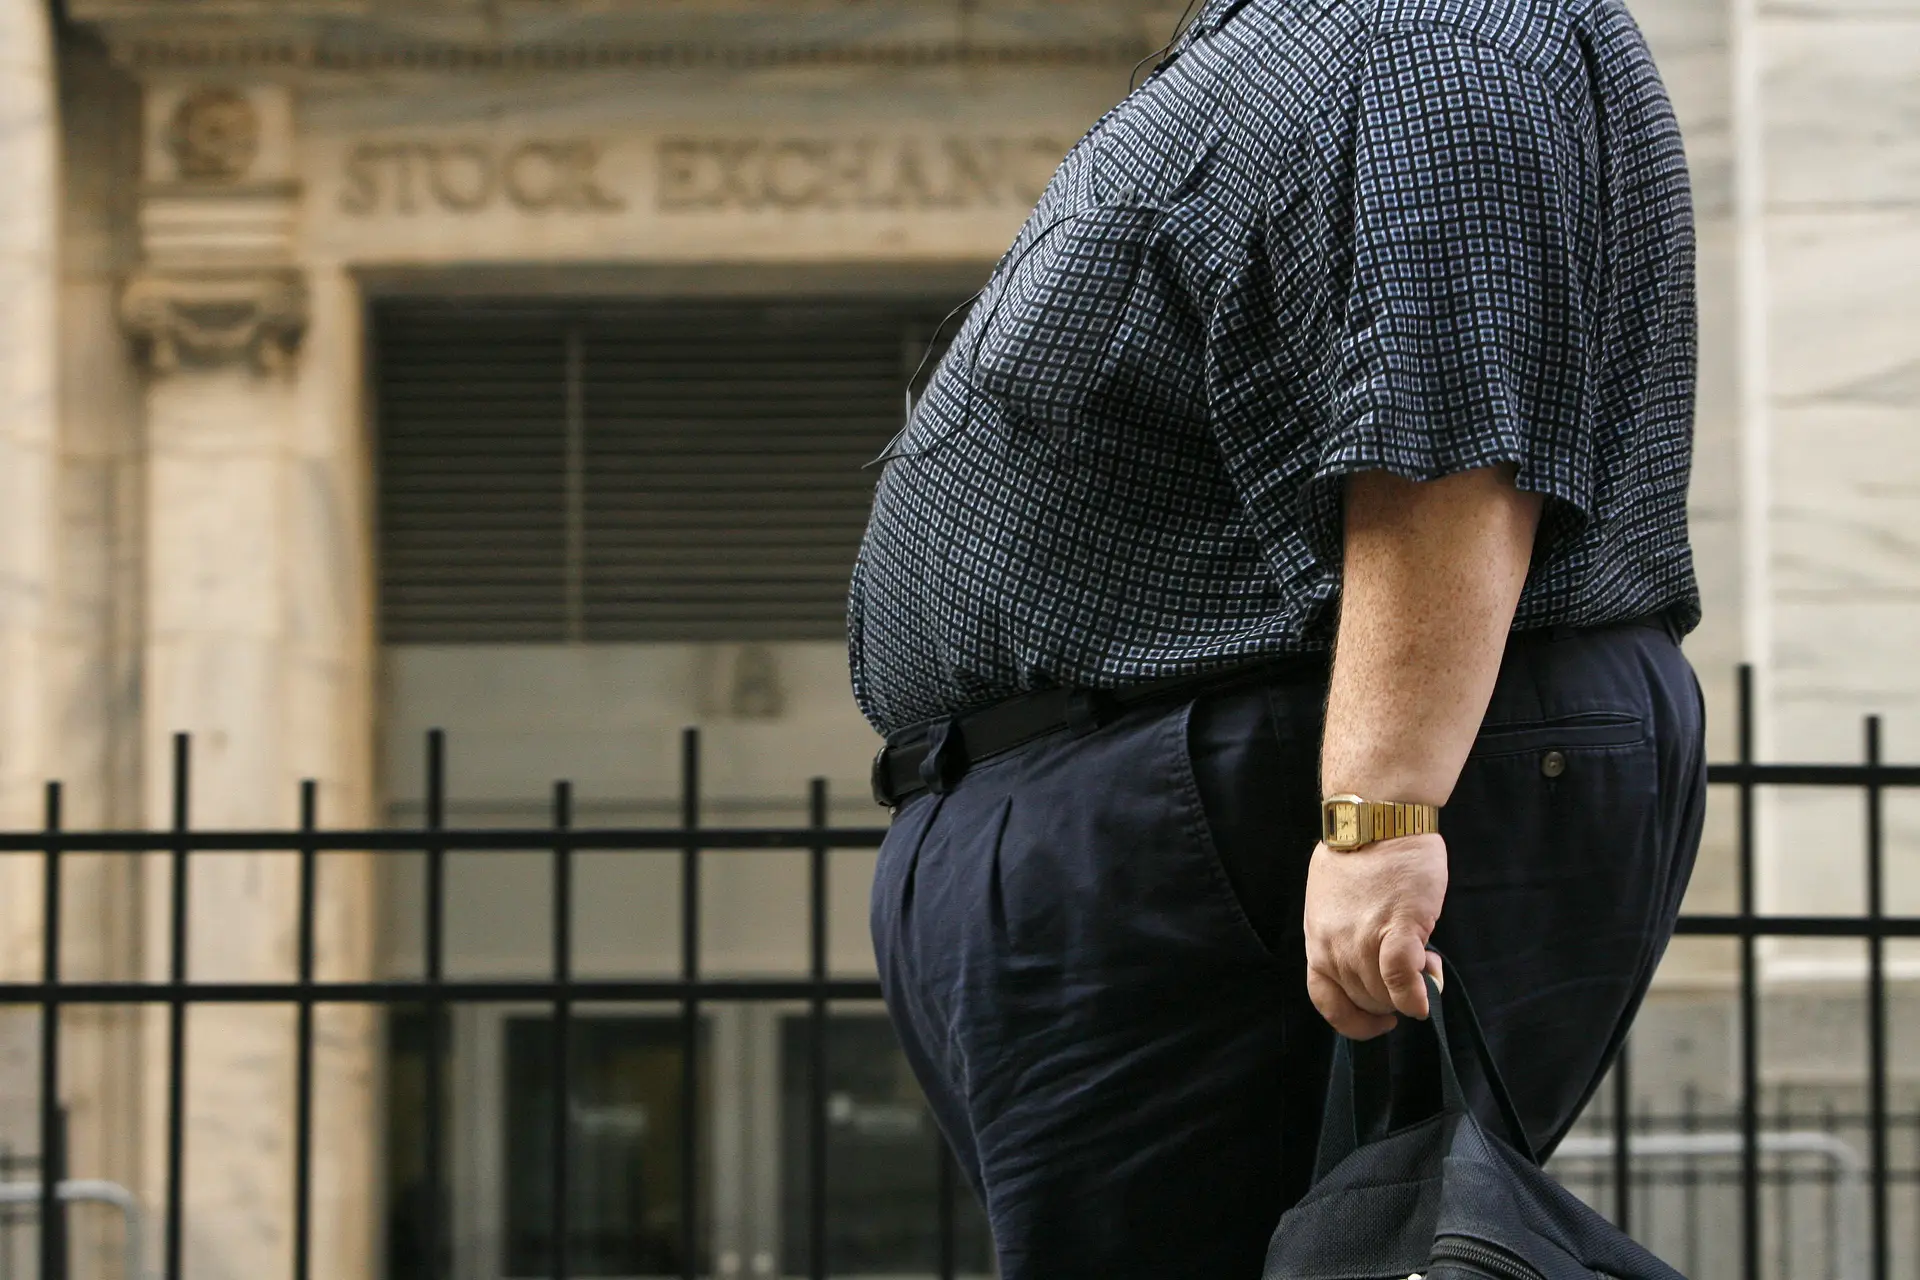 Parlamento recomenda medidas de prevenção e combate à obesidade